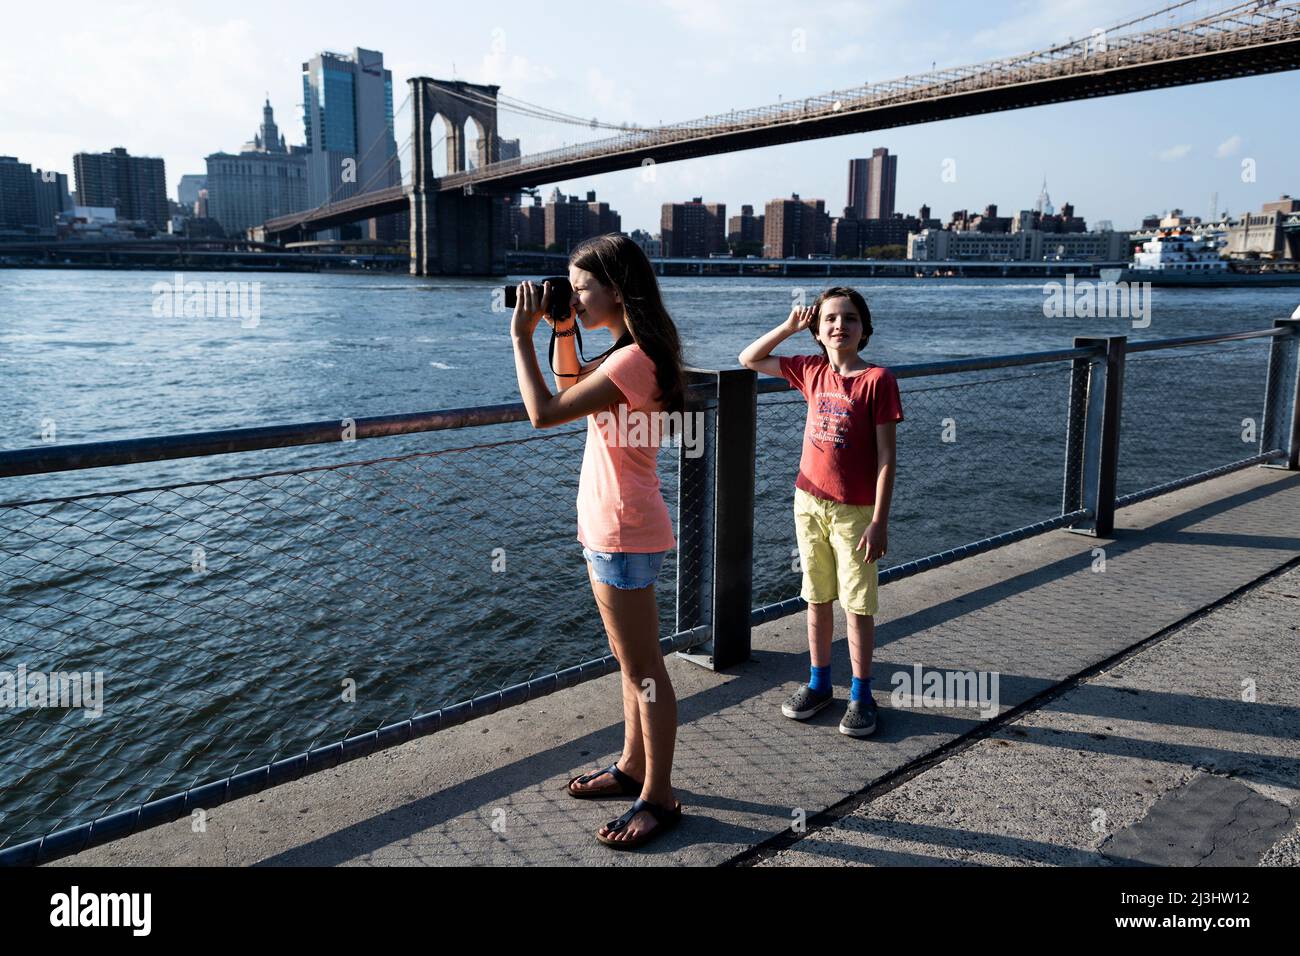 DUMBO/FULTON FERRY, New York City, NY, États-Unis, jeune fille de 14 ans de race blanche et adolescent de 12 ans de race blanche, tous deux avec des cheveux bruns et un style d'été devant le pont de Brooklyn sur East River Banque D'Images